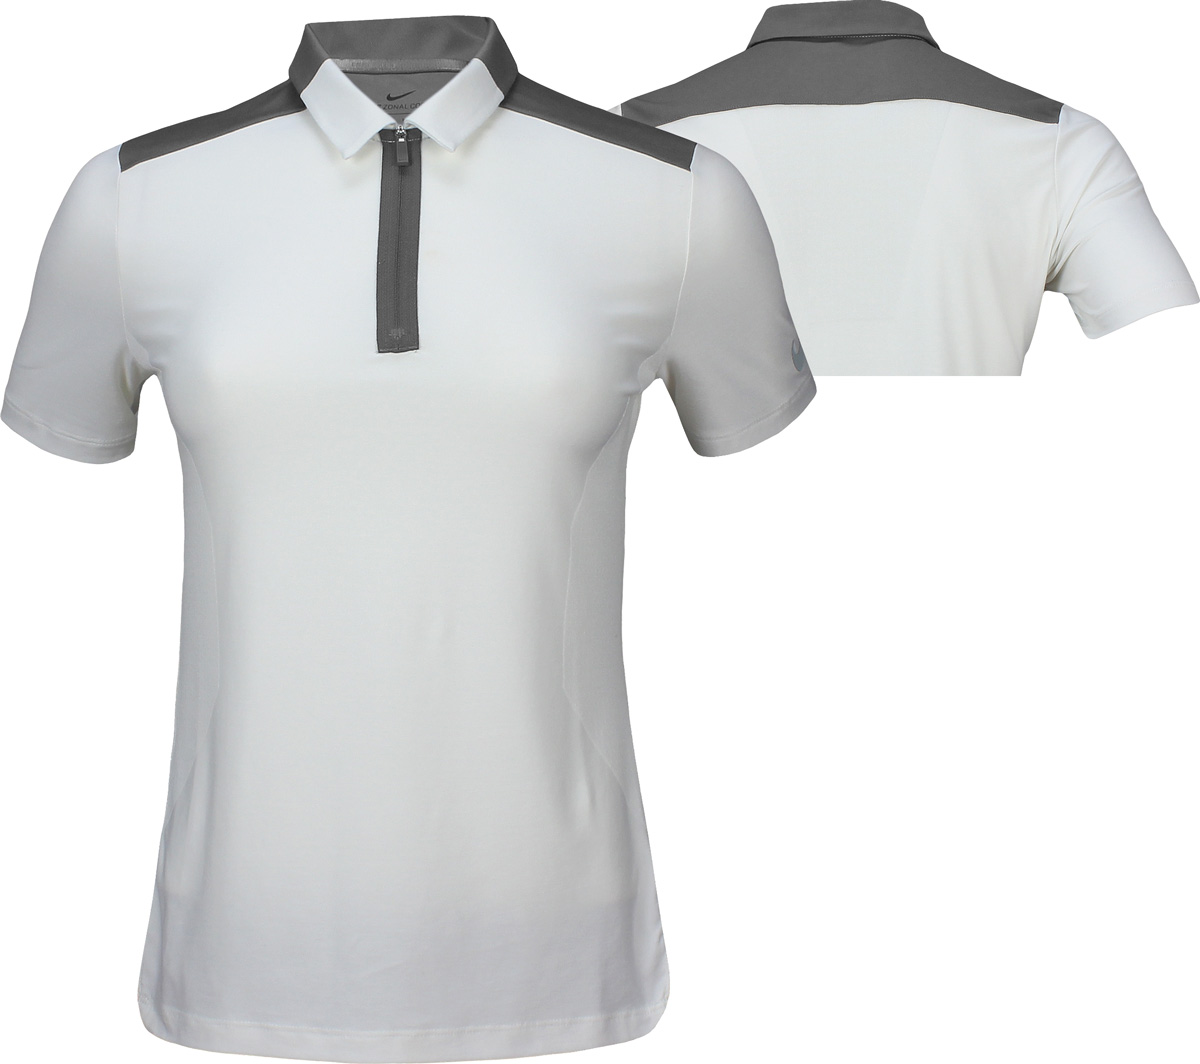 Afhankelijkheid Huisdieren willekeurig Nike Women's Dri-FIT Zonal Cooling Statement Golf Shirts - ON SALE